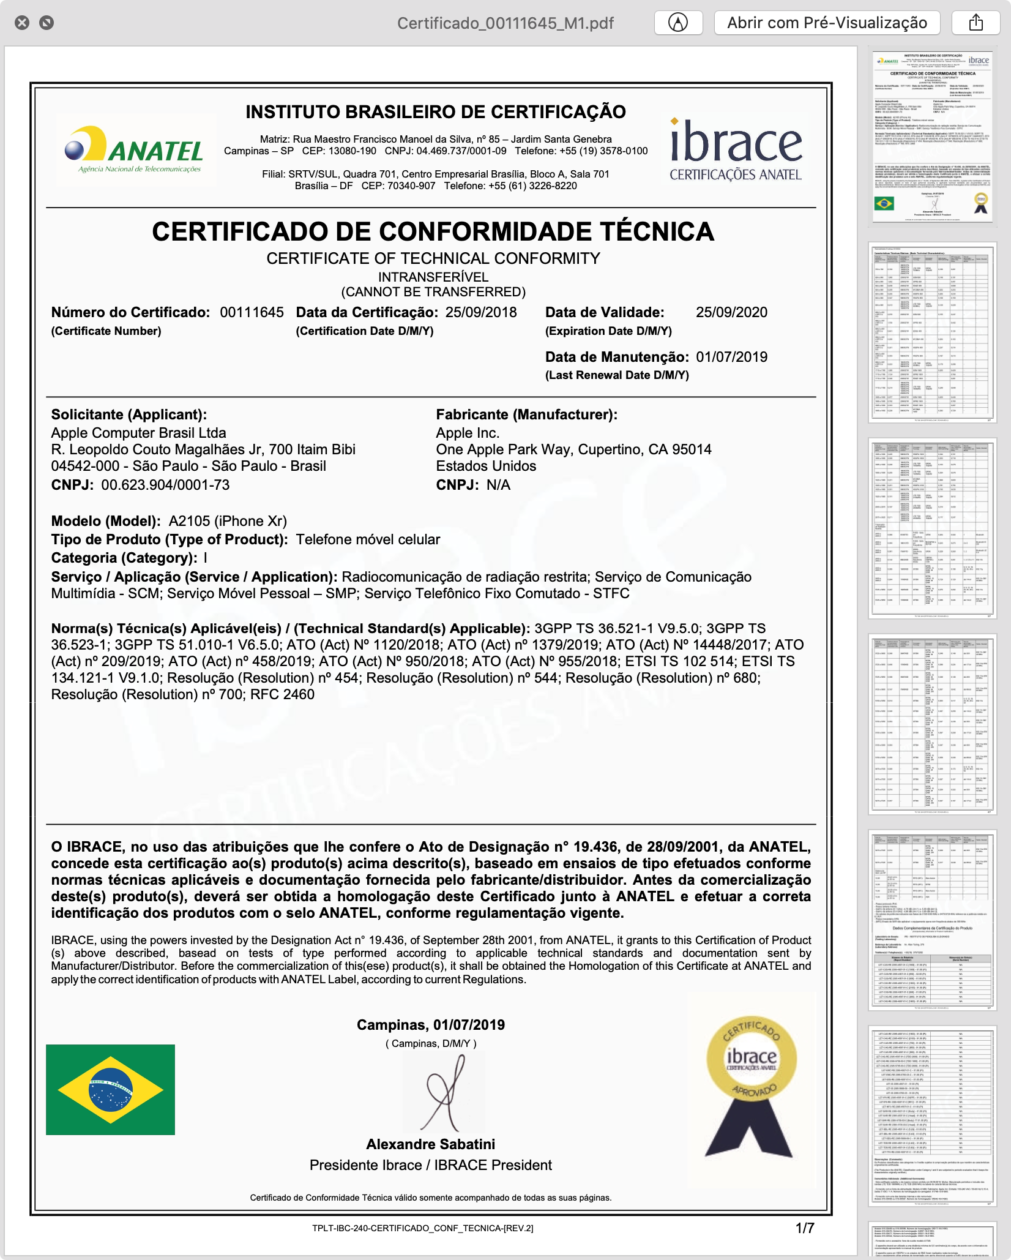 Certificado de Conformidade Técnica do iPhone XR